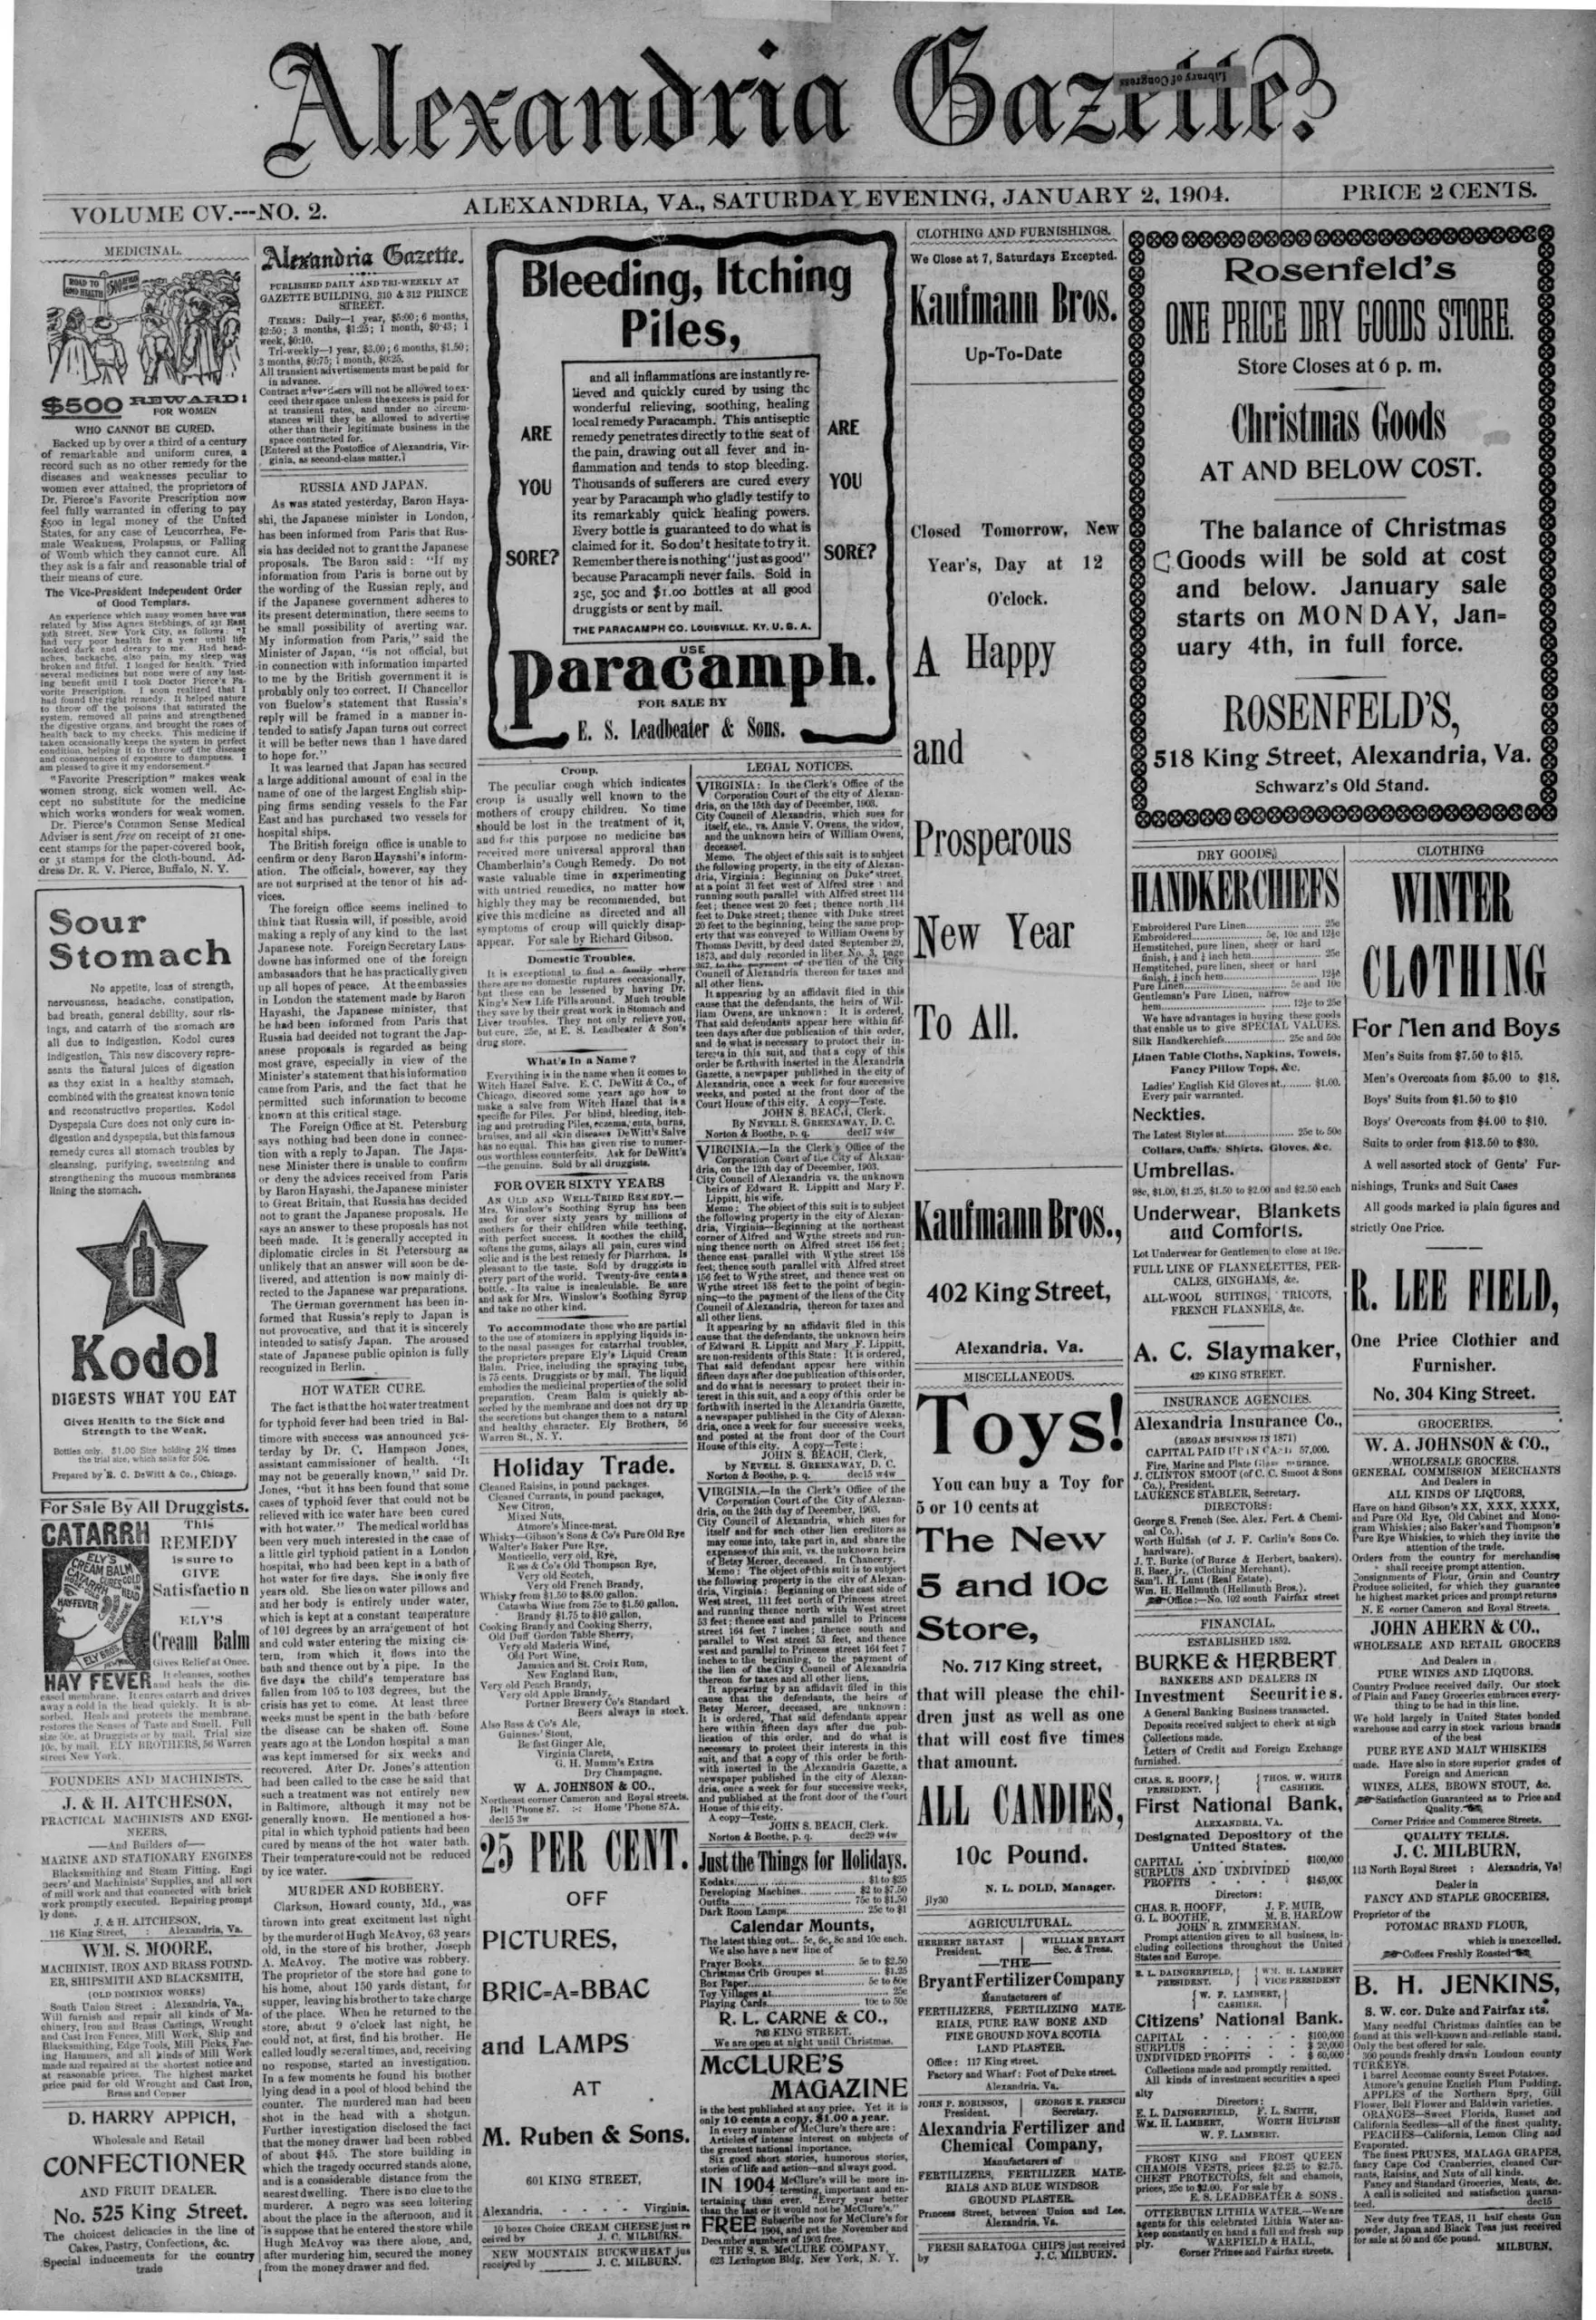 The Alexandria Gazette - January 2nd, 1904